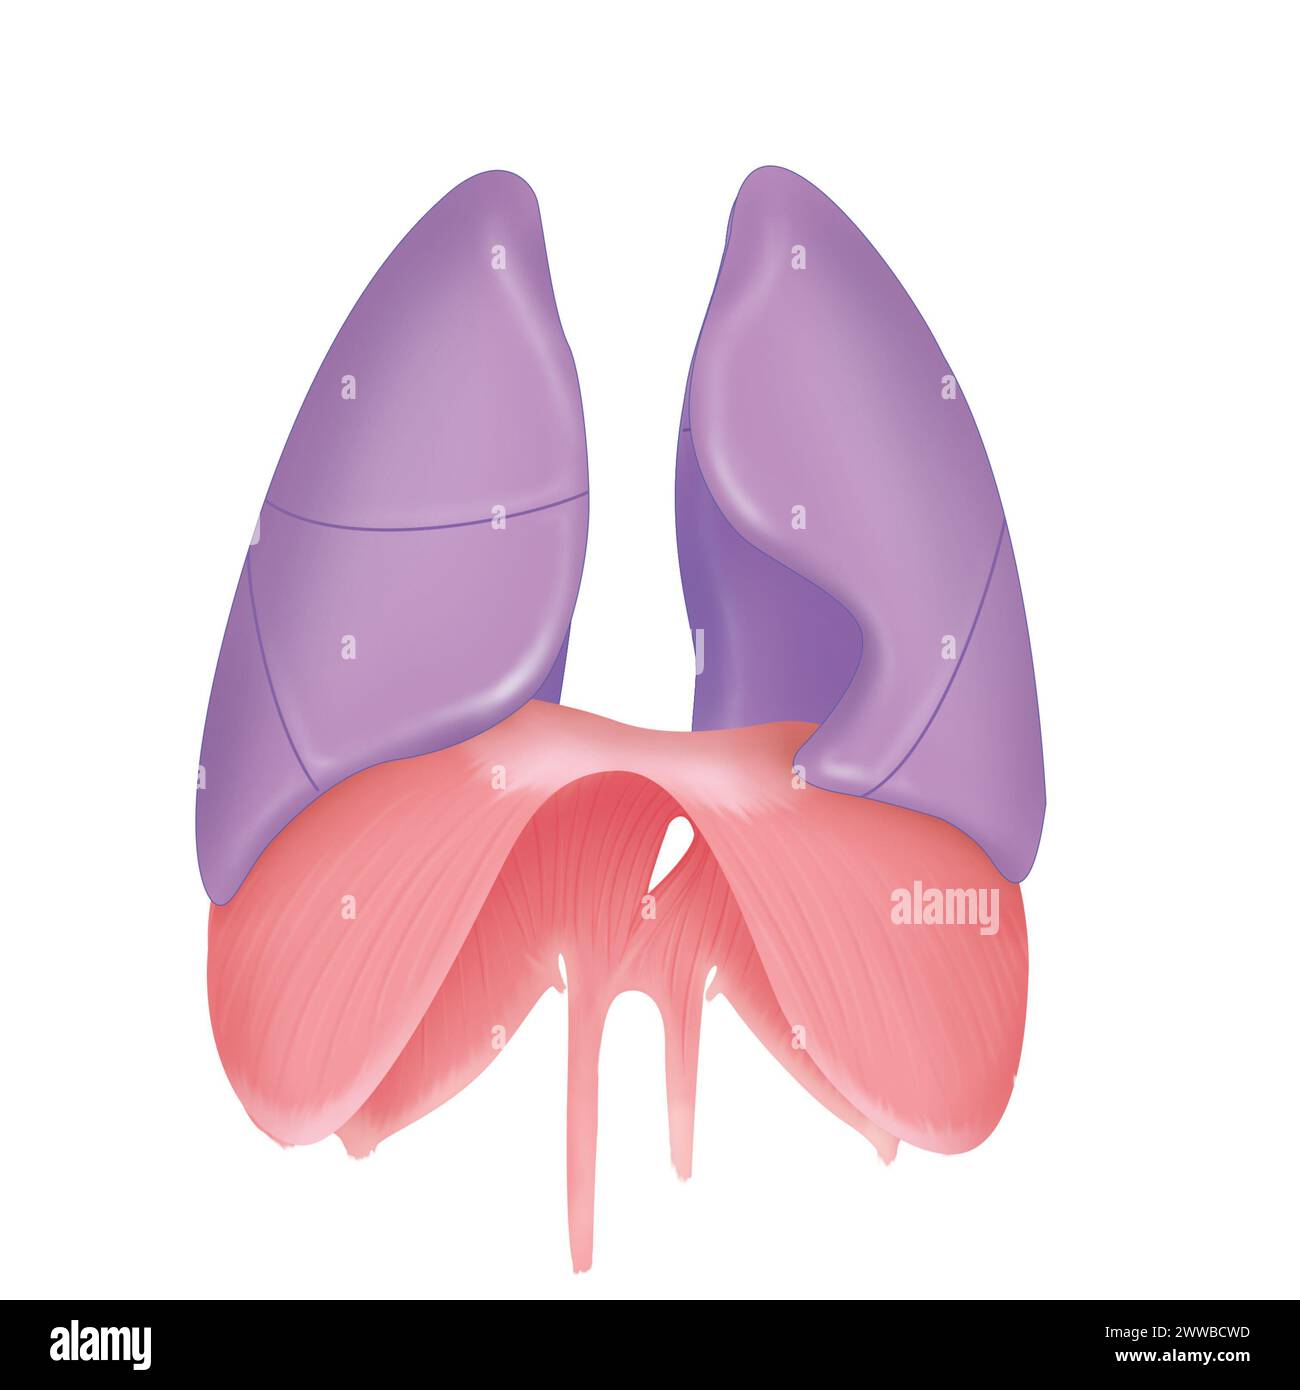 Lunge und Zwerchfell in der Vorderansicht. Auf der rechten Lunge sind in der anterioren Ansicht drei Lappen sichtbar. Stockfoto